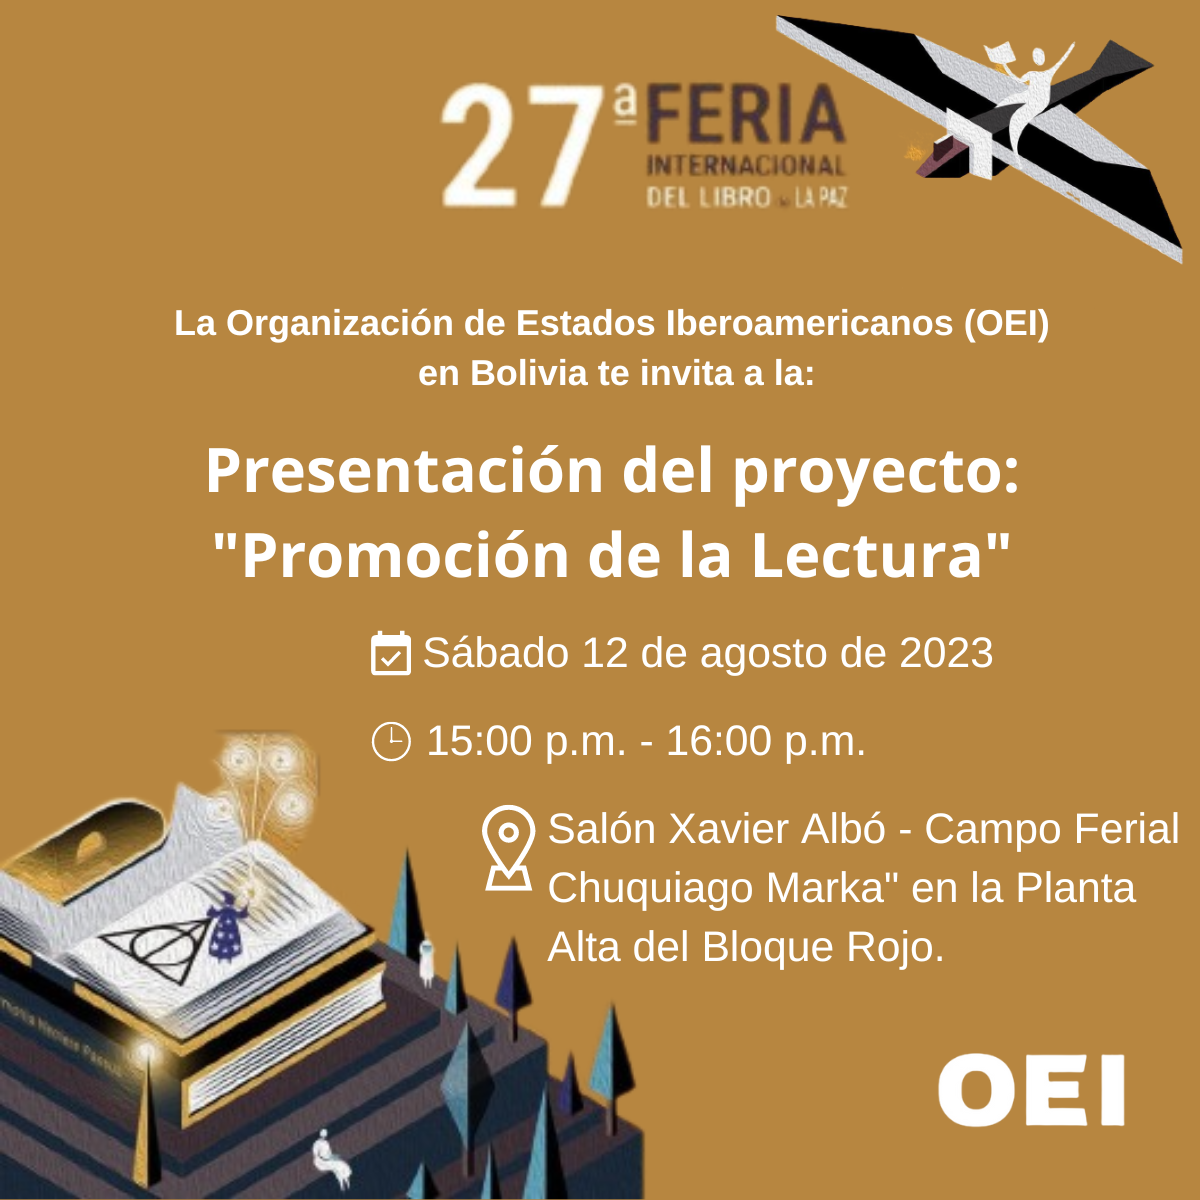 Presentación del Proyecto "Promoción y Fortalecimiento de la Lectura" en Bolivia